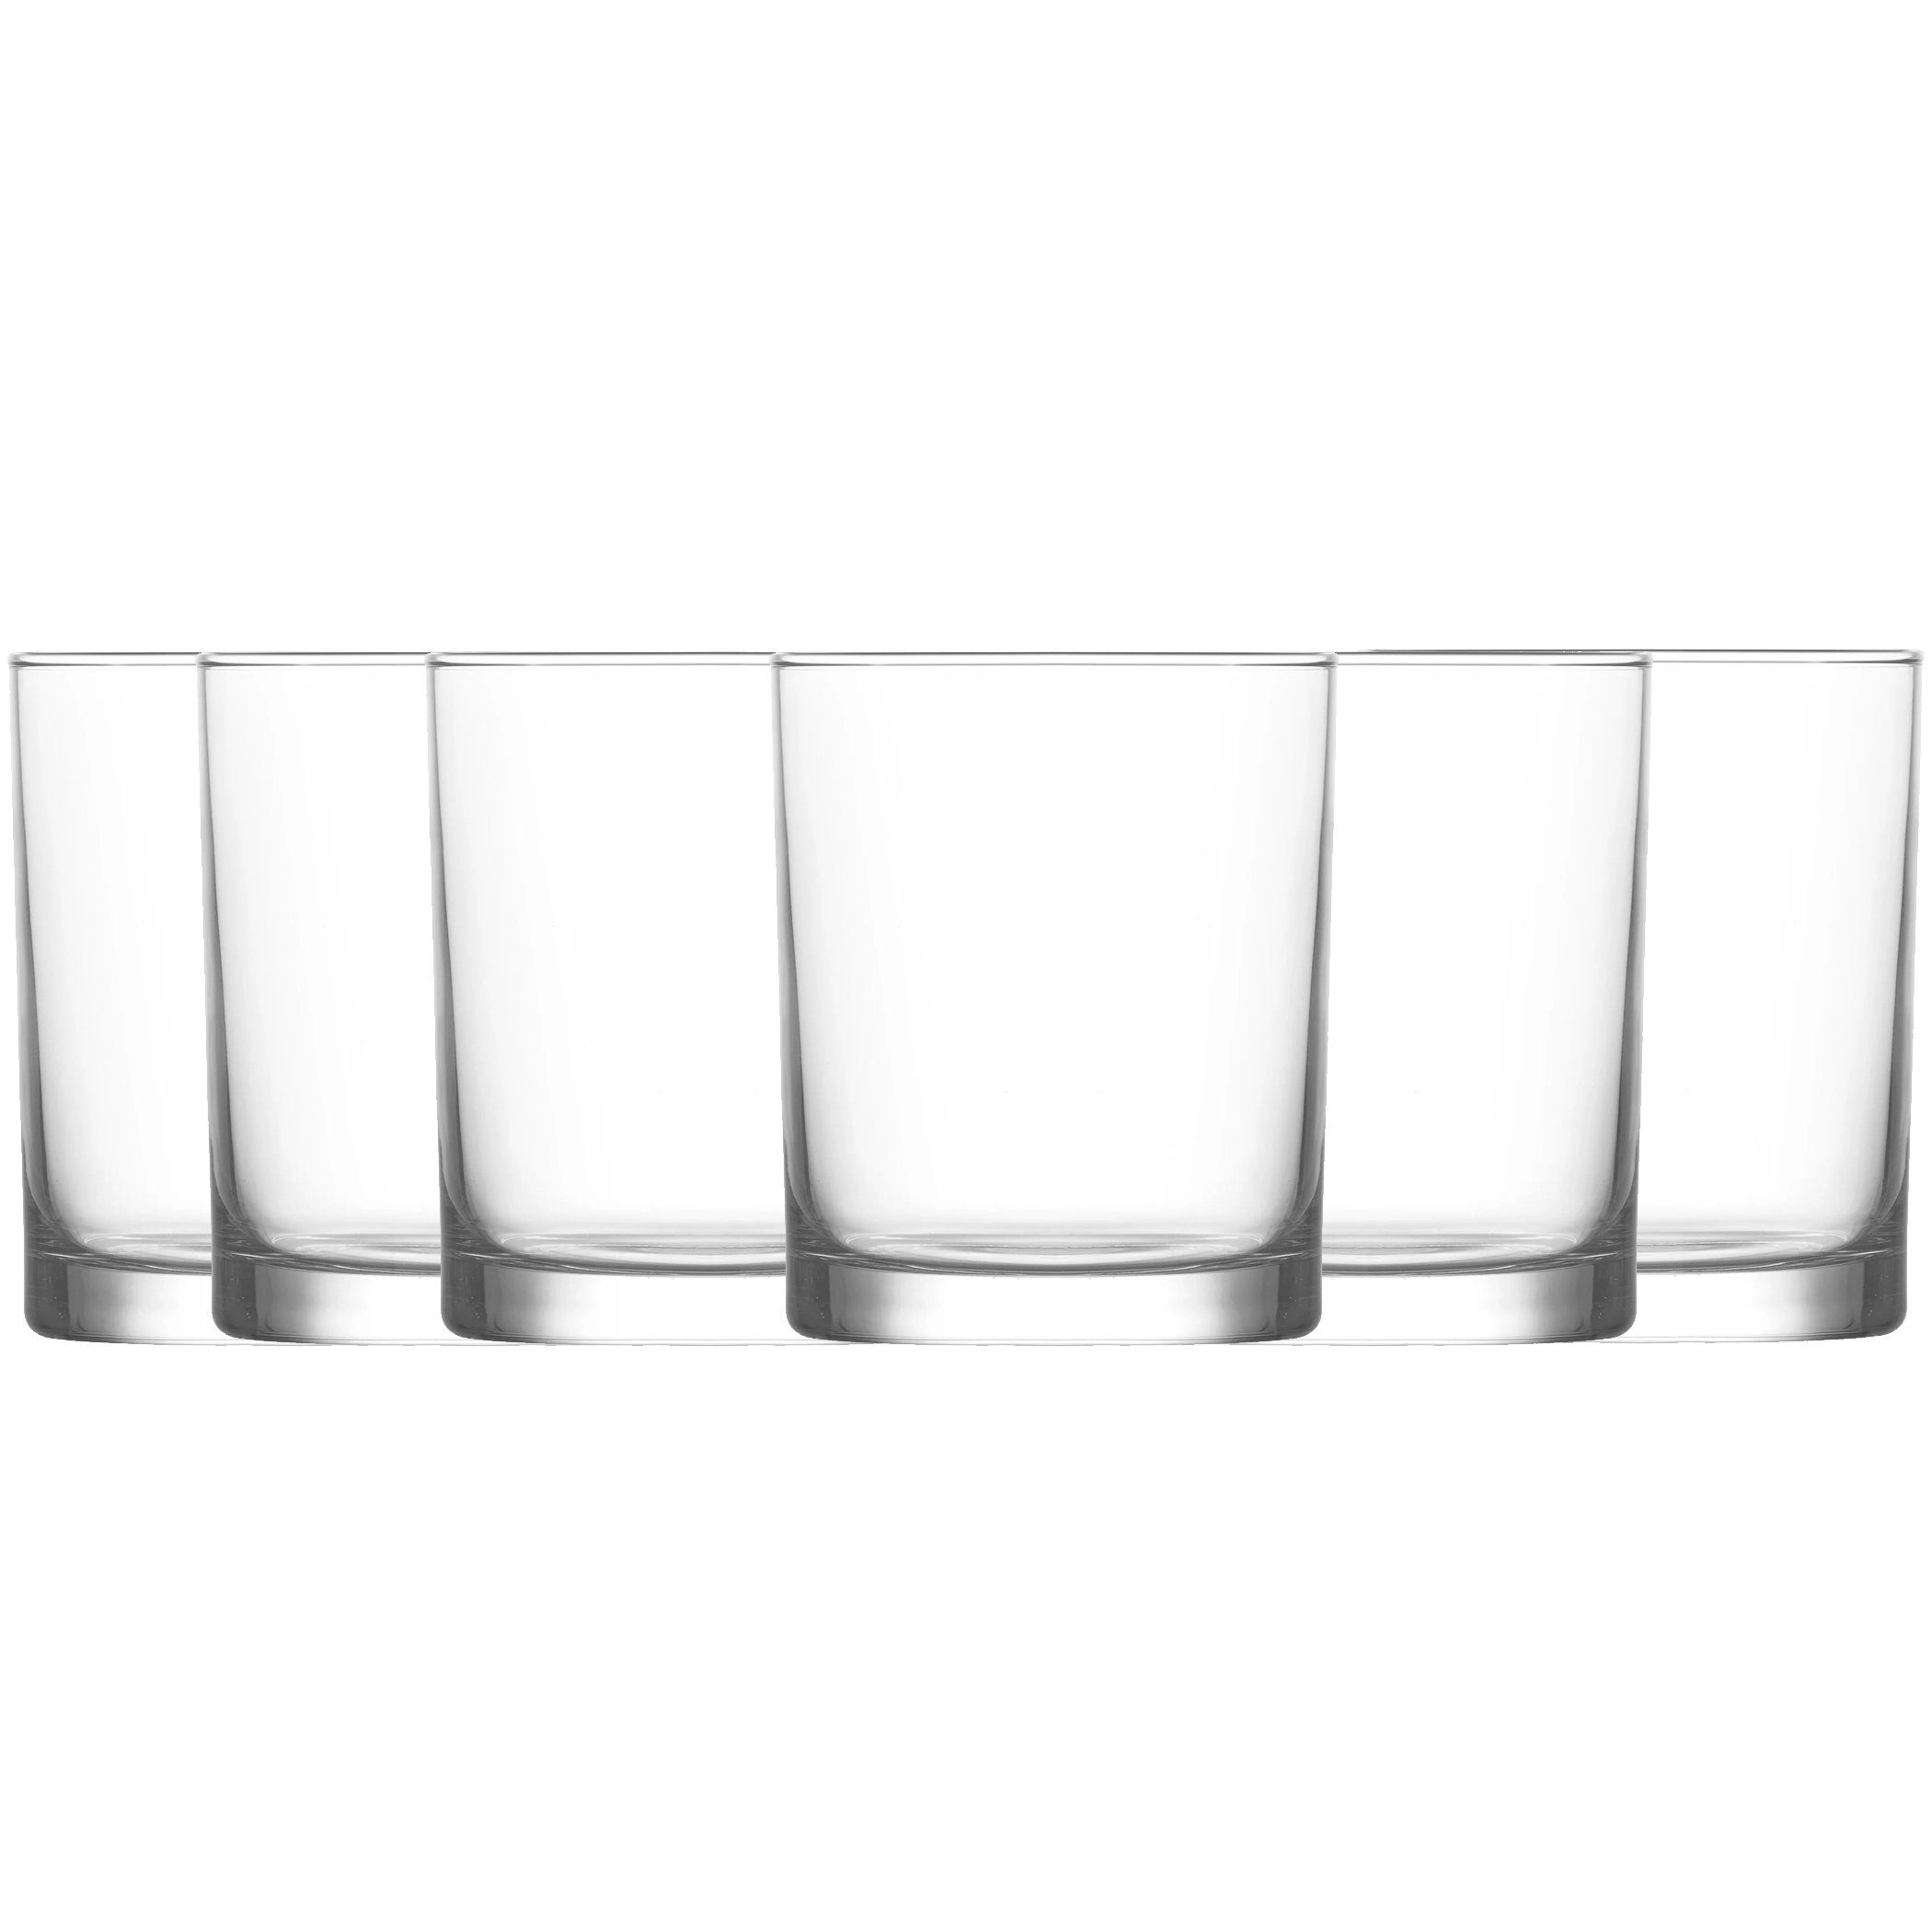 LAV Glas Gläser Set Wassergläser 6 teiligTrinkglas Saftgläser, Glas, Spülmaschinenfest LBR317 265ml